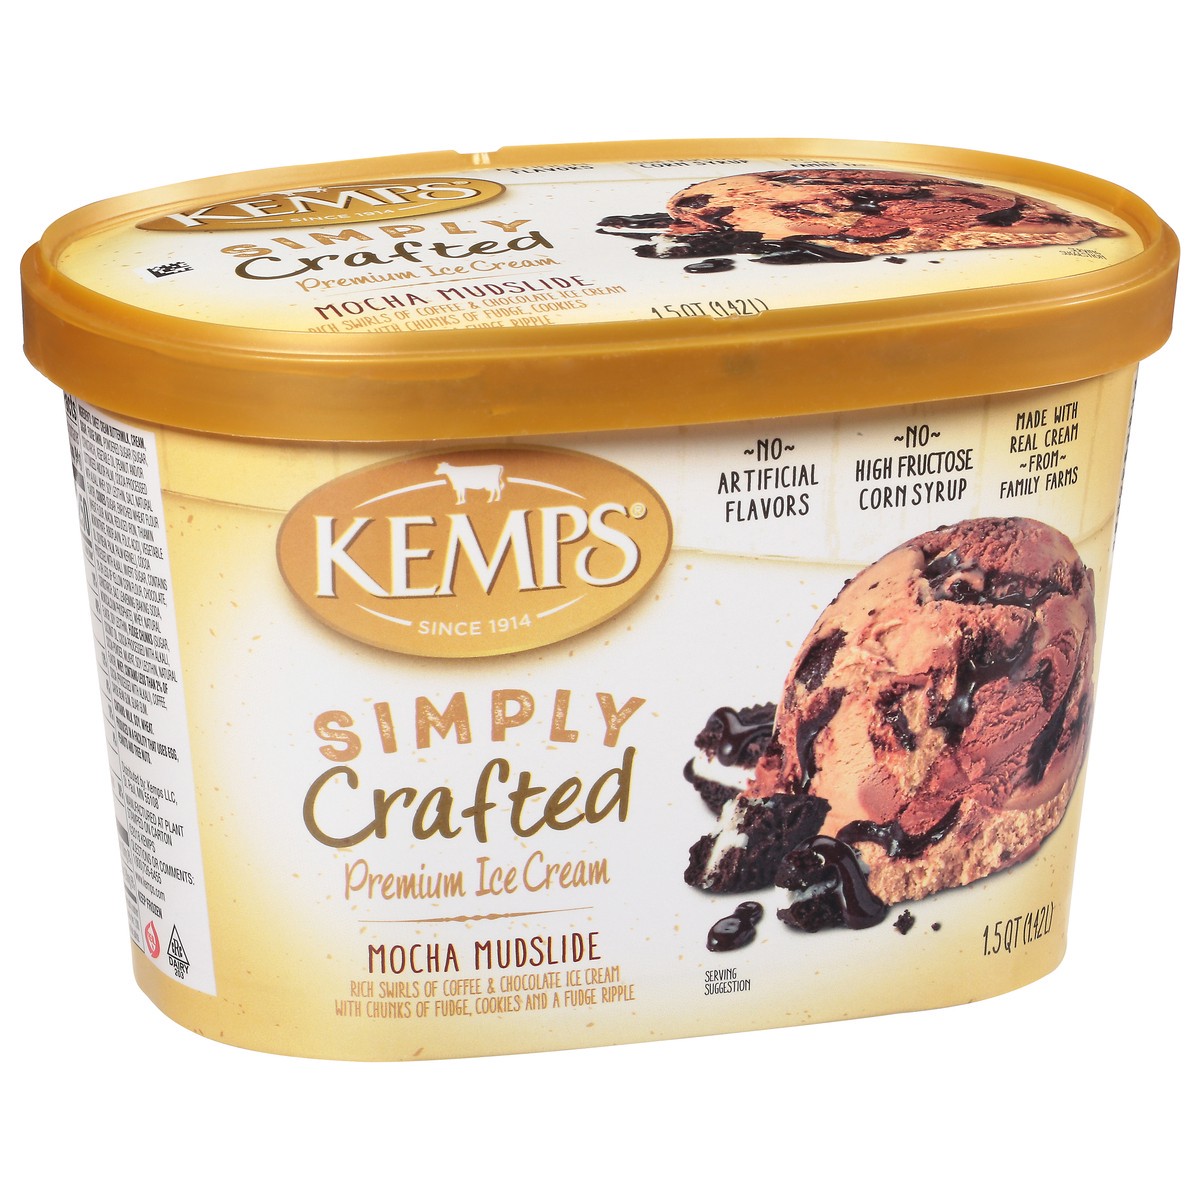 slide 14 of 14, Kemps Simply Crafted Premium Mocha Mudslide Ice Cream 1.5 qt, 1.5 qt